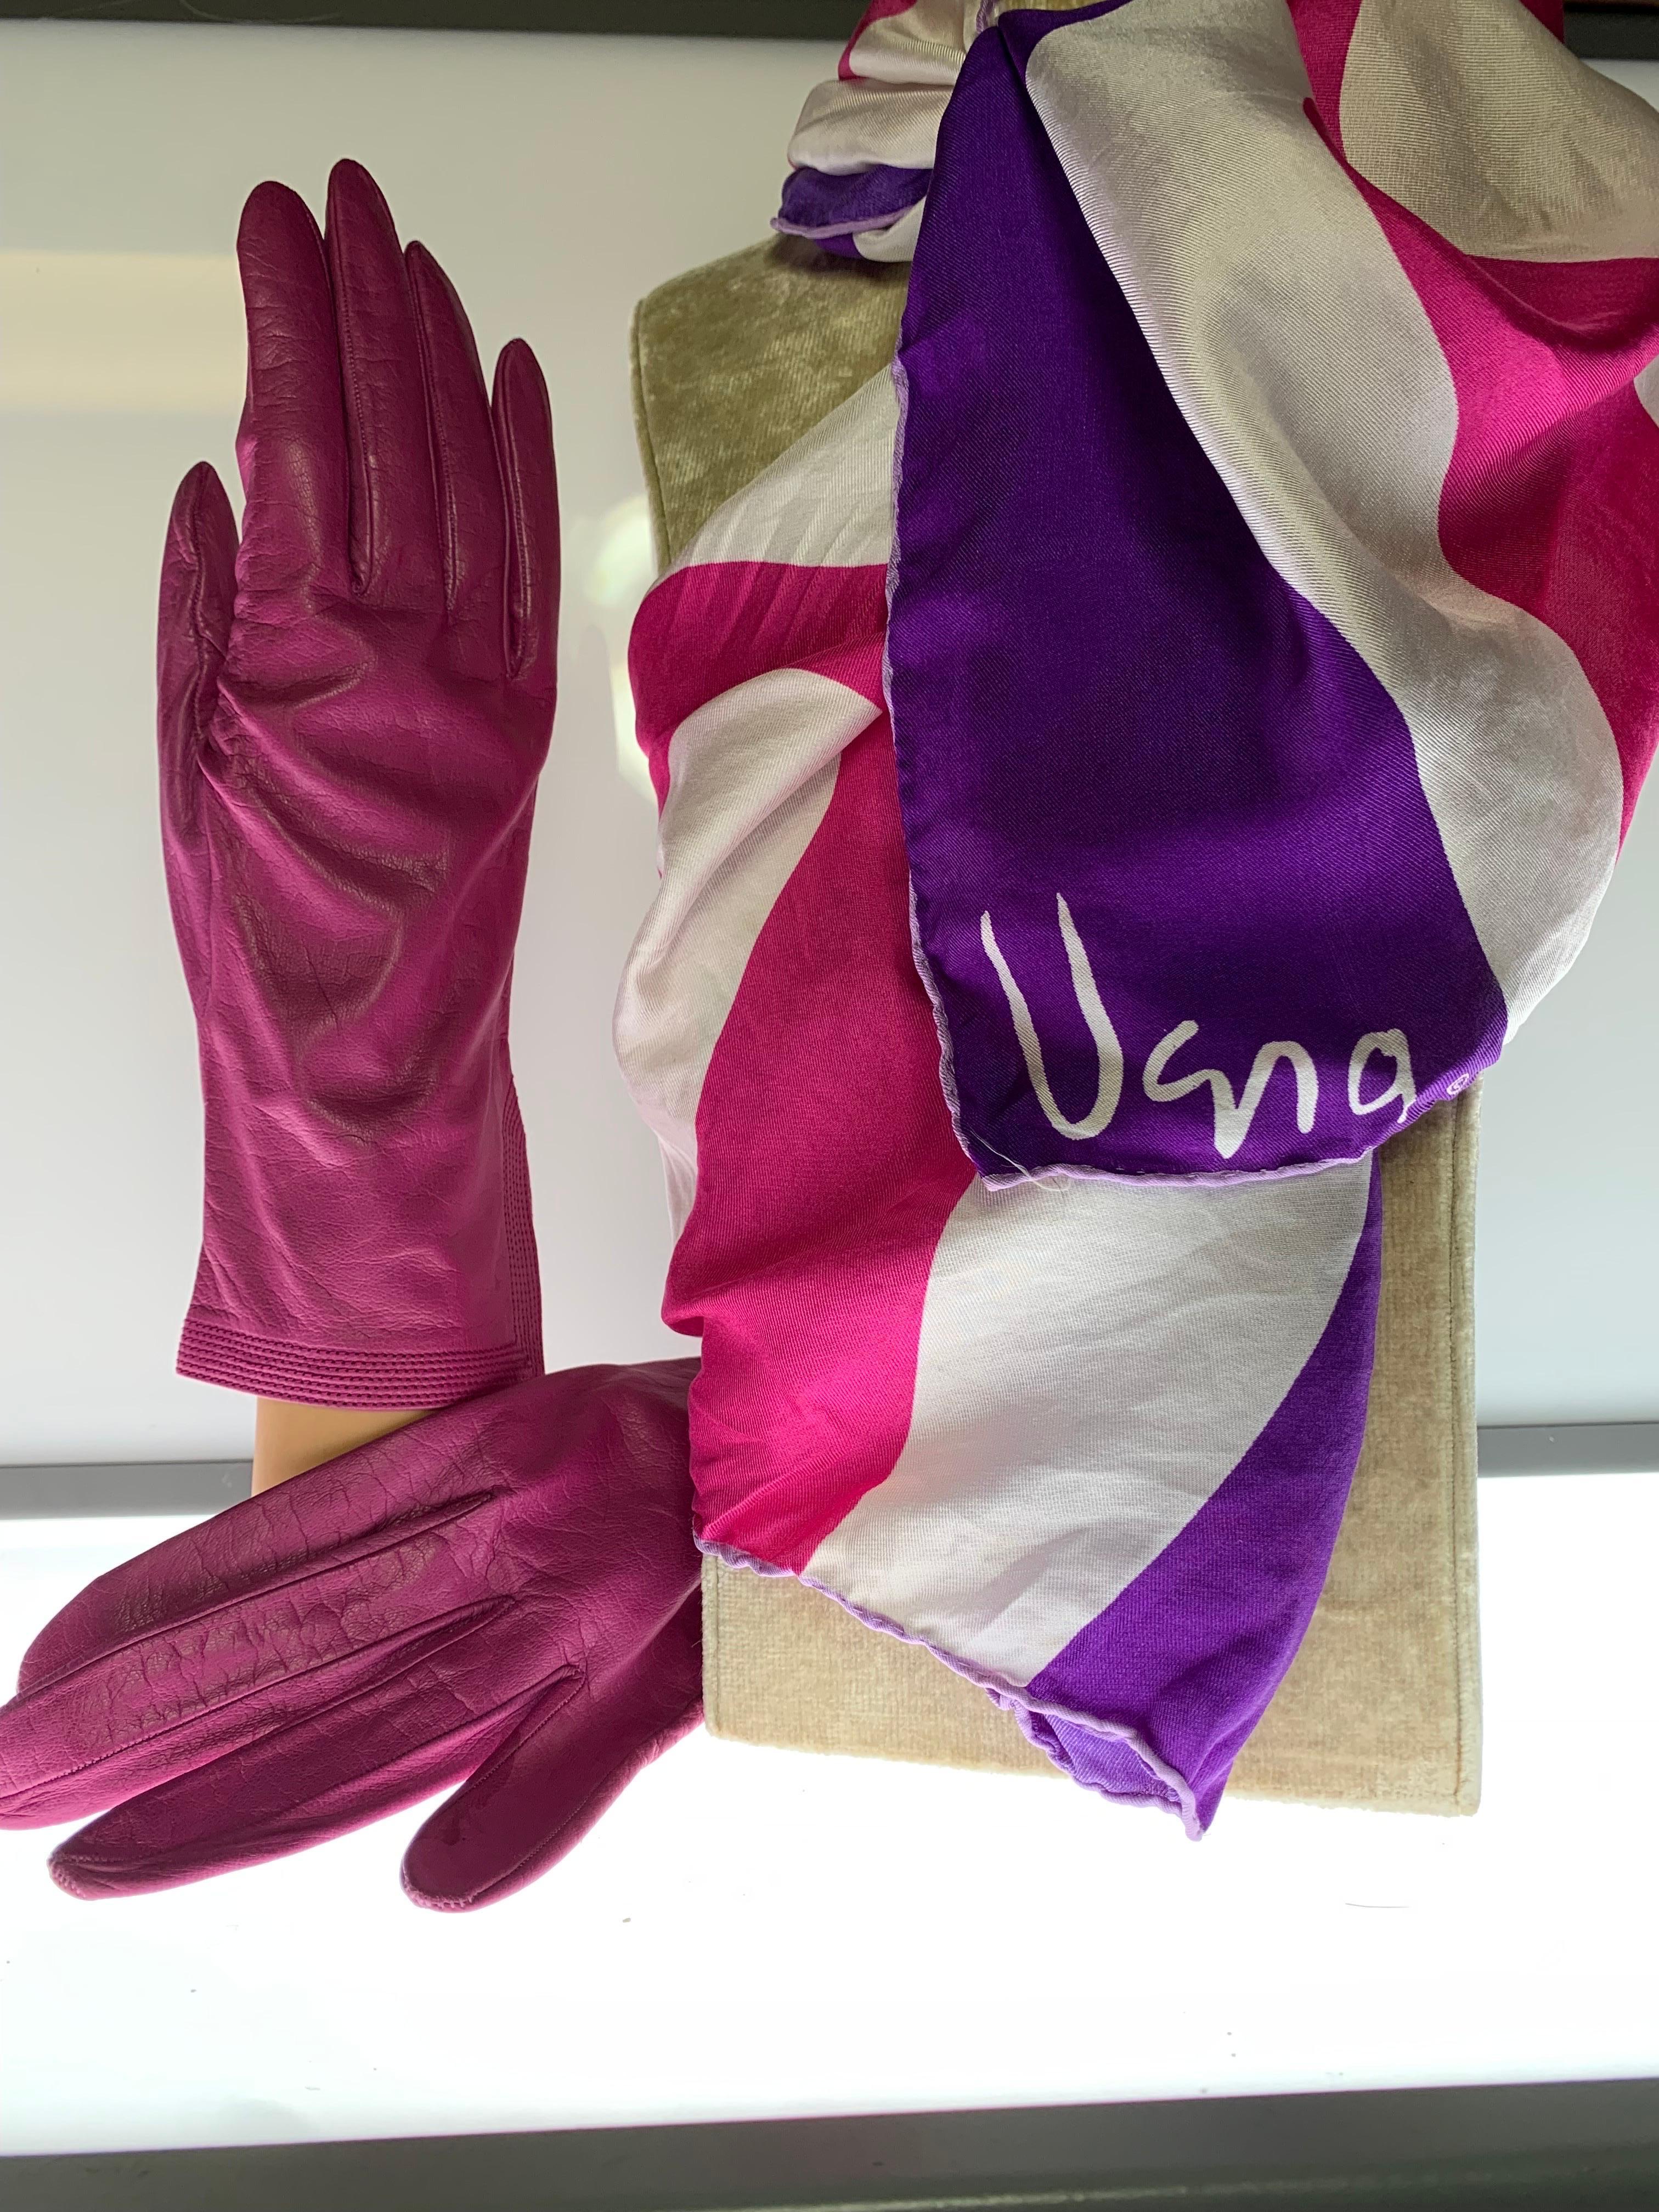 1980er Yves Saint Laurent Pink Kid Leder Handschuhe & Mod Coordinating Vera Schal Set:  Die Handschuhe haben eine schöne Belüftung und wiederholte Trapunto-Nähte an der Seite und sind mit Seide gefüttert. Neu, nie getragen. Mit einem passenden